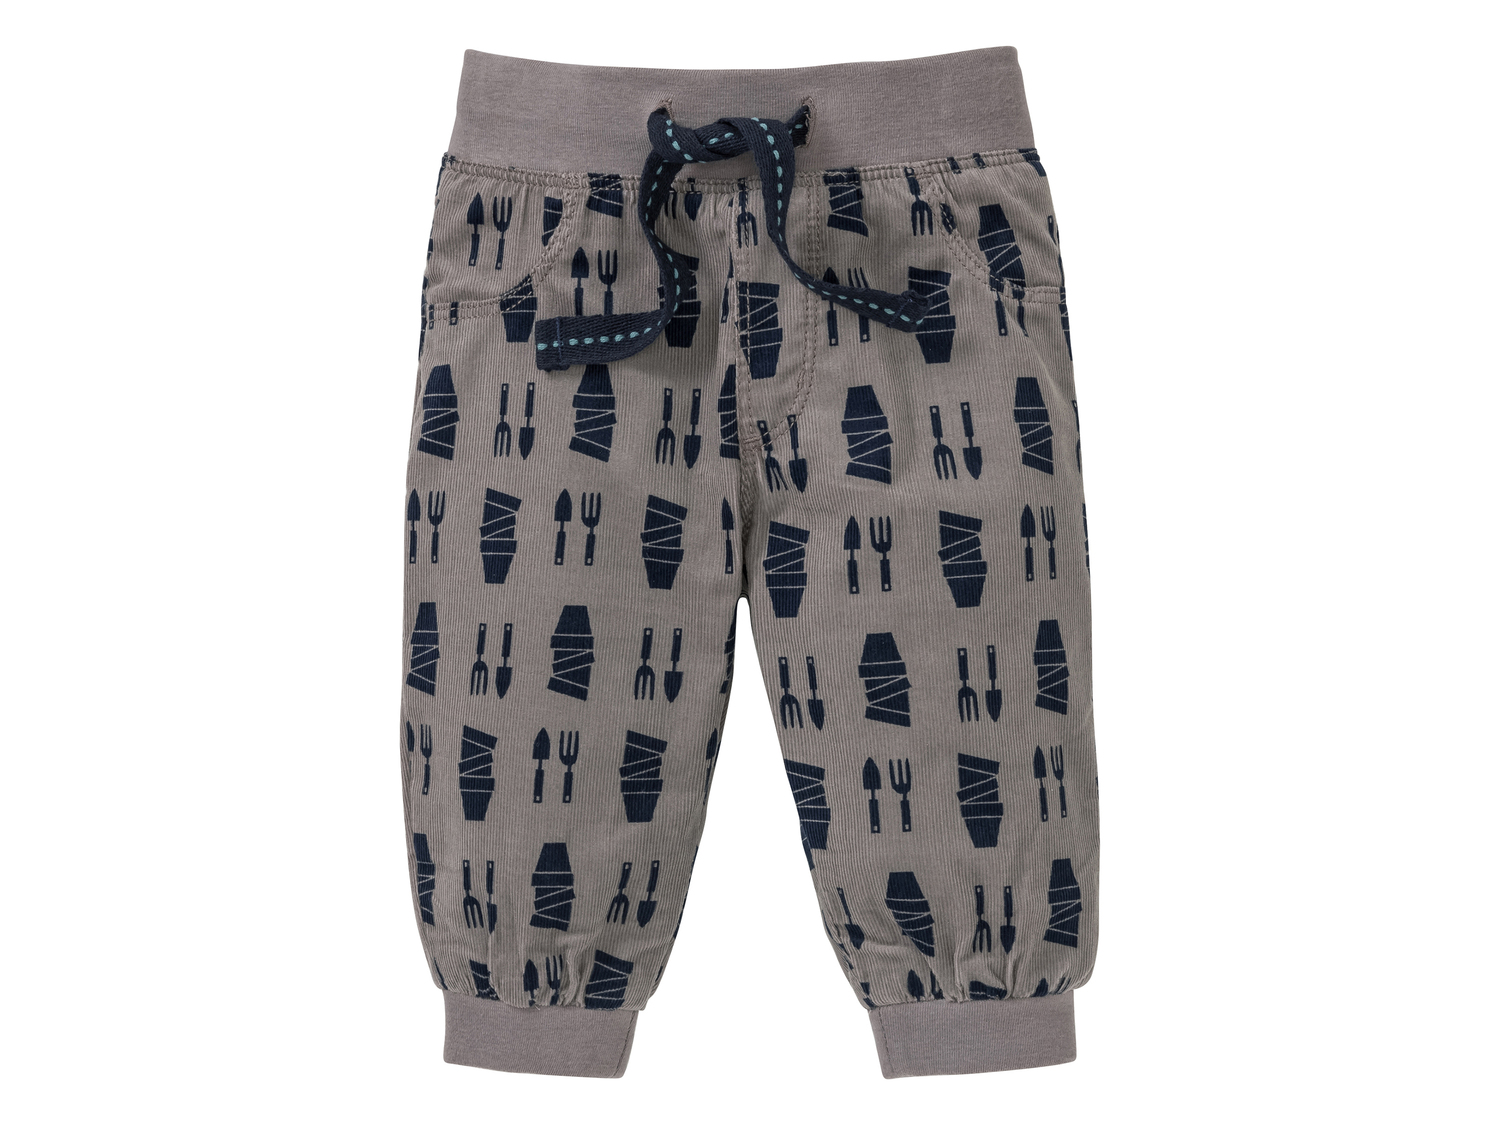 Pantaloni per neonati Lupilu, le prix 4.99 &#8364; 
- Puro cotone
- Taglie: ...